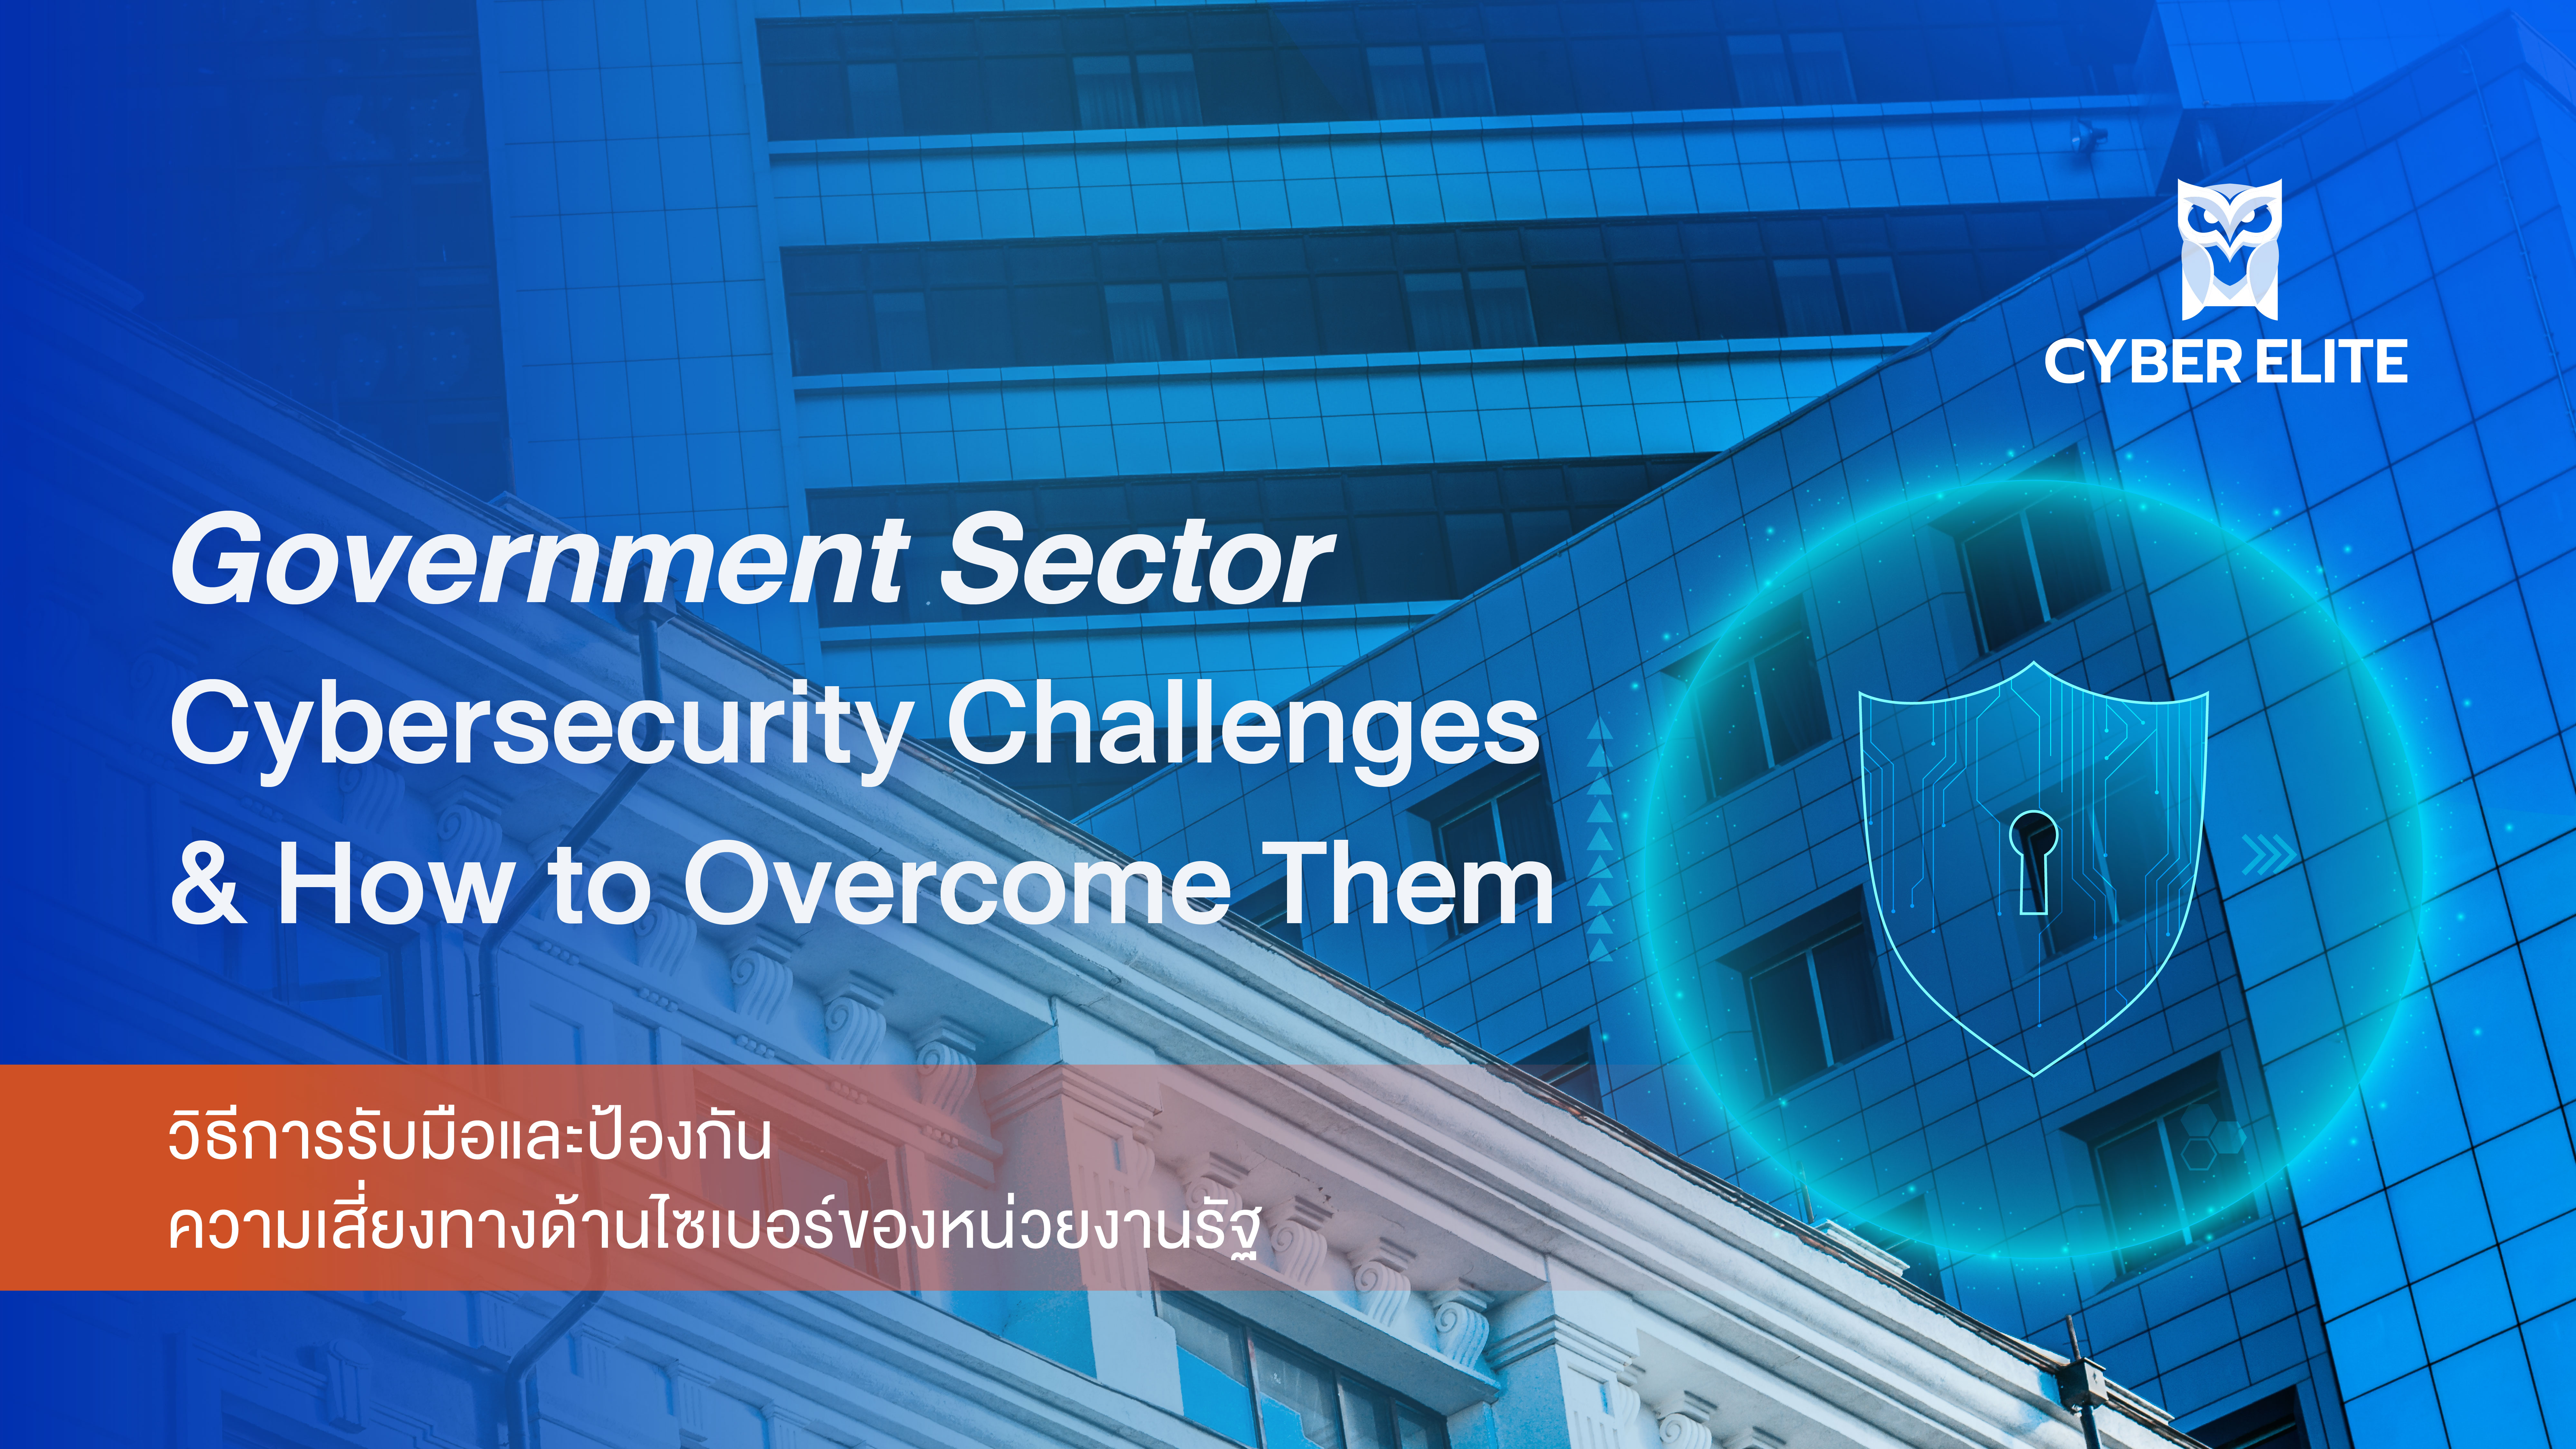 วิธีการรับมือและป้องกันความเสี่ยงทางด้านไซเบอร์ของหน่วยงานรัฐ (Government Sector Cybersecurity Challenges & How to Overcome Them)